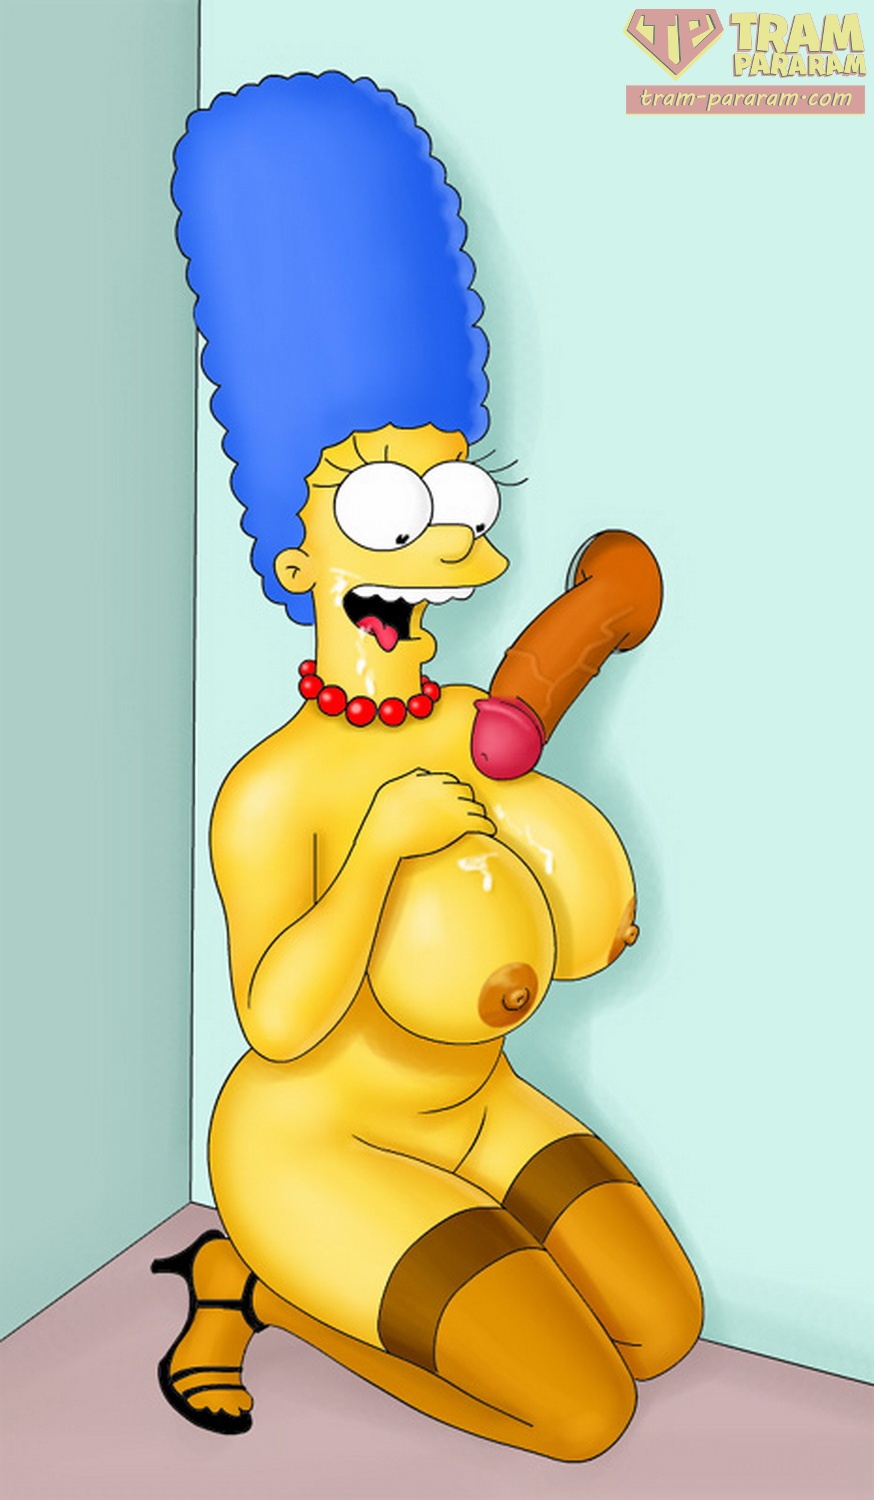 Marge simpson sucks cock